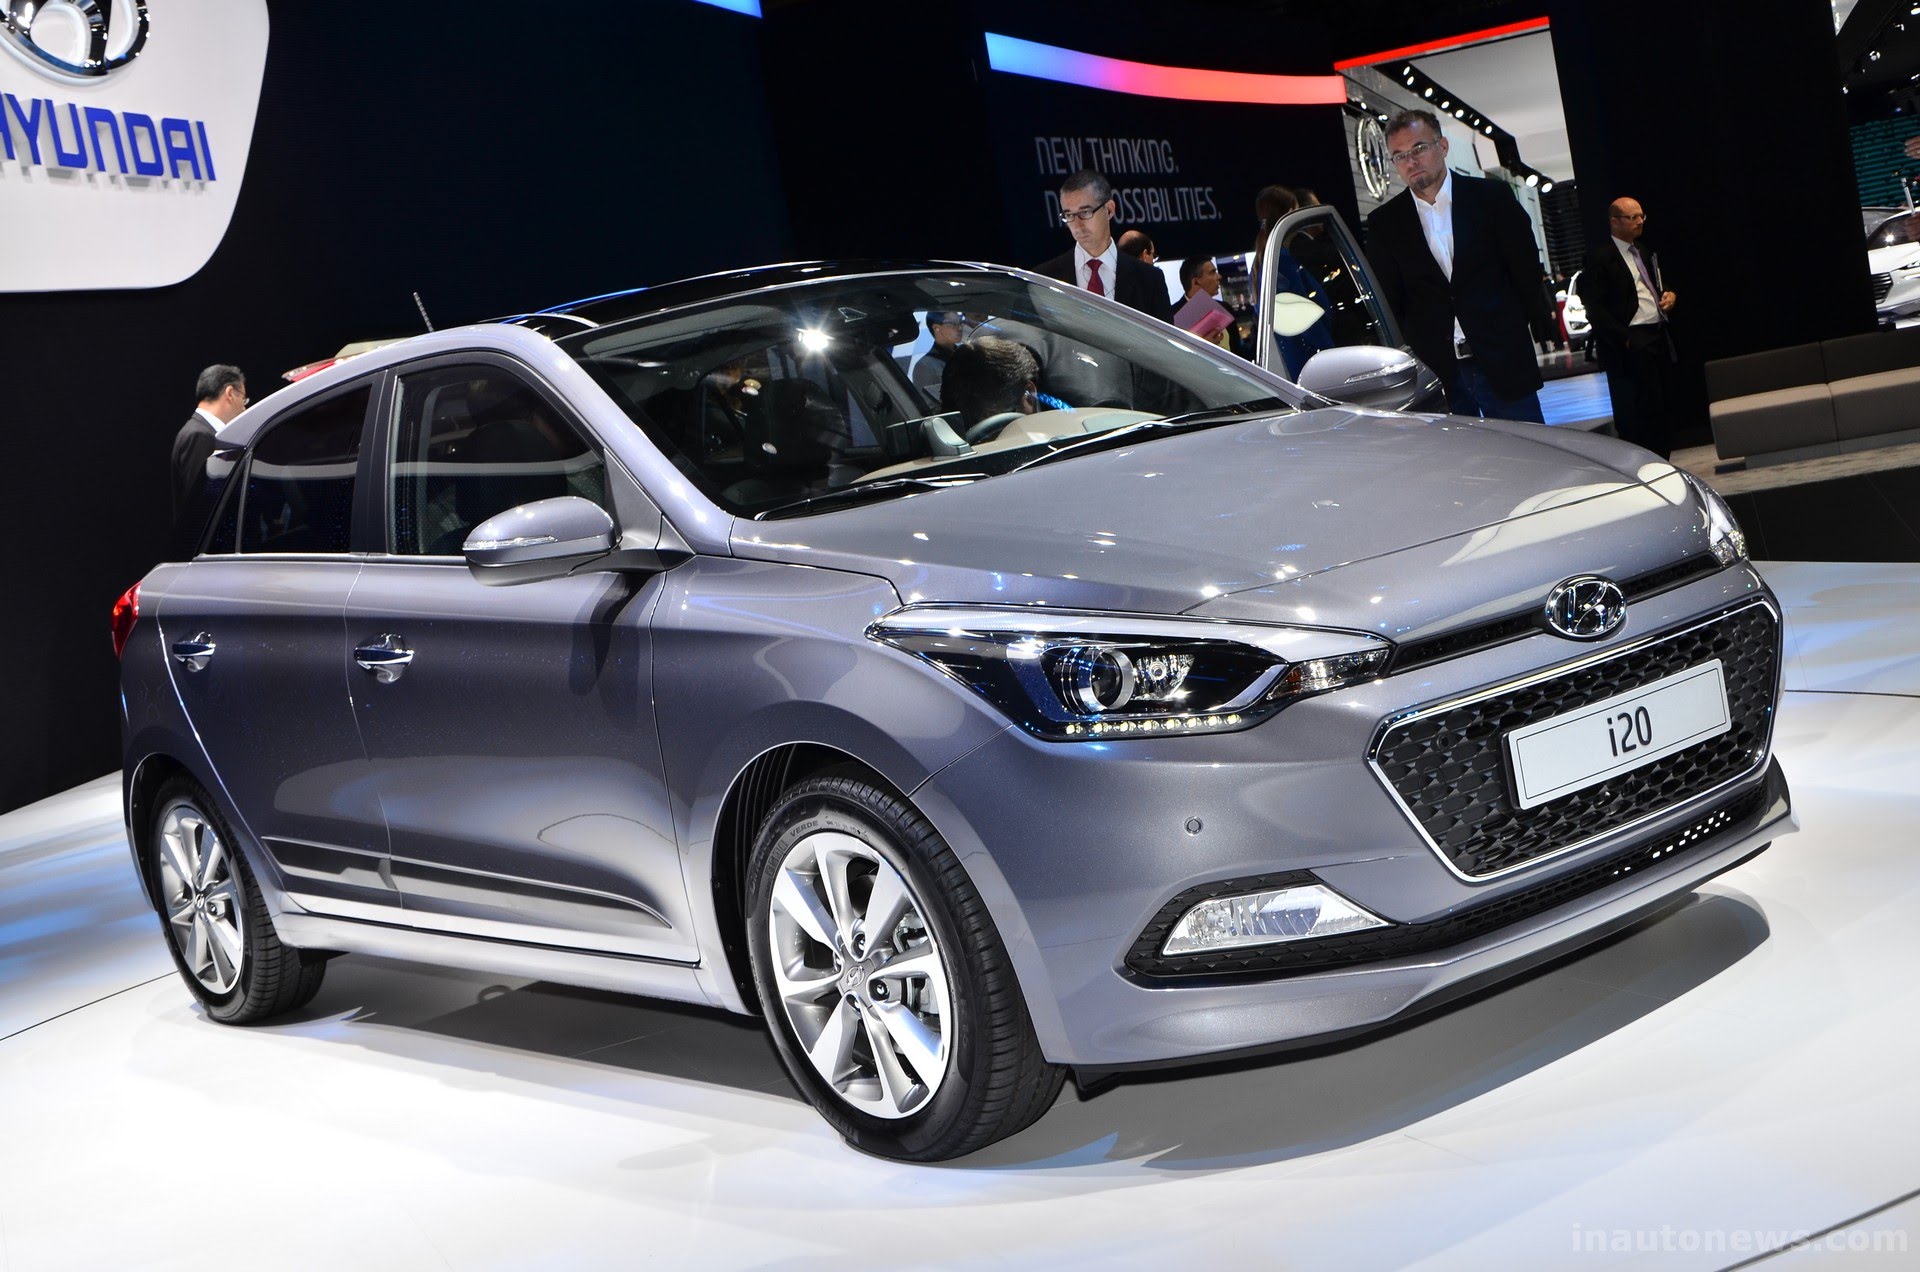 Rò rỉ thông tin mẫu Hyundai i20 N Line với giá chỉ từ 400 triệu đồng